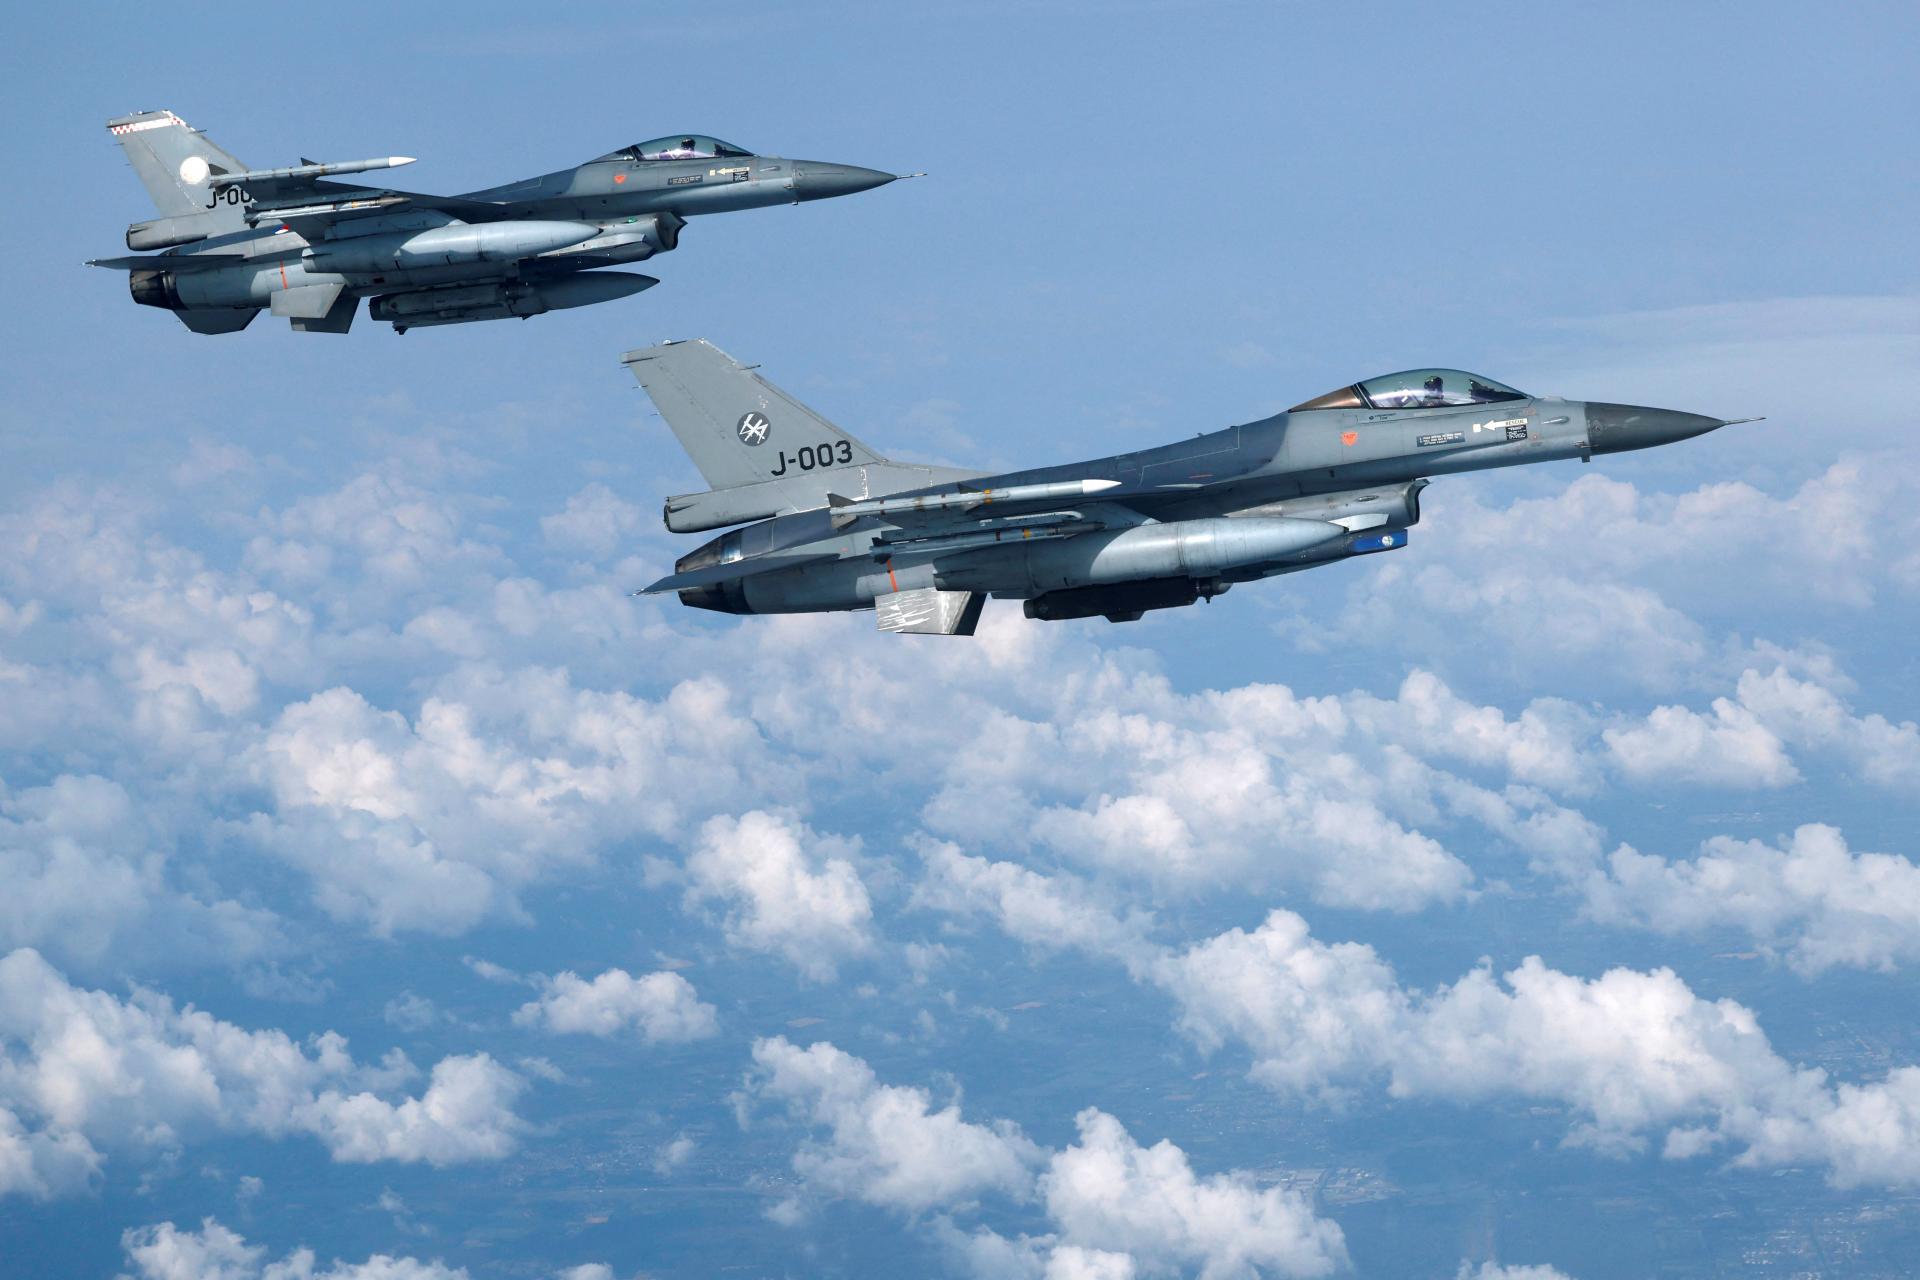 Ukrajina očakáva okrídlenú primadonu. F-16 však môže byť bez údržby prekliatím